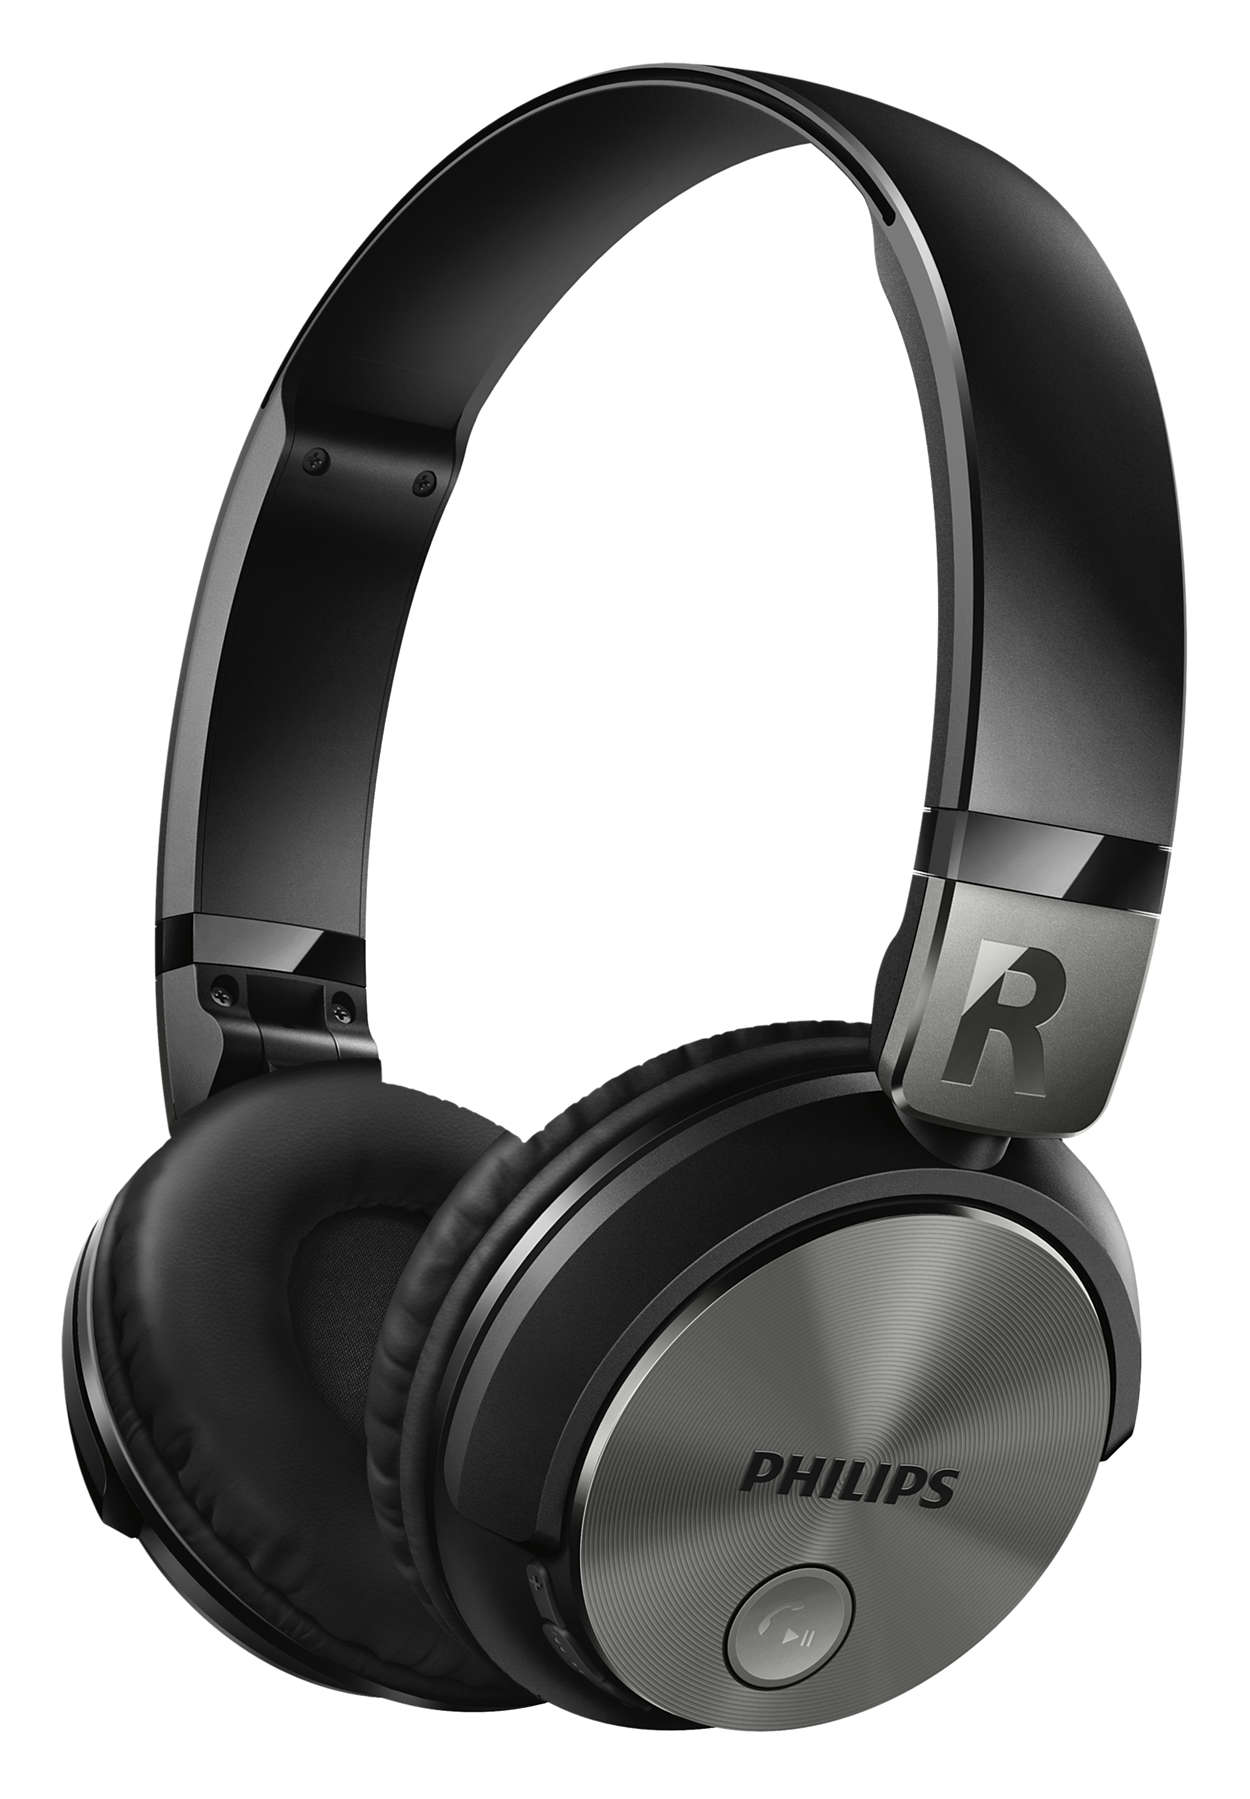 Was es beim Kauf die Philips bluetooth headset zu analysieren gibt!